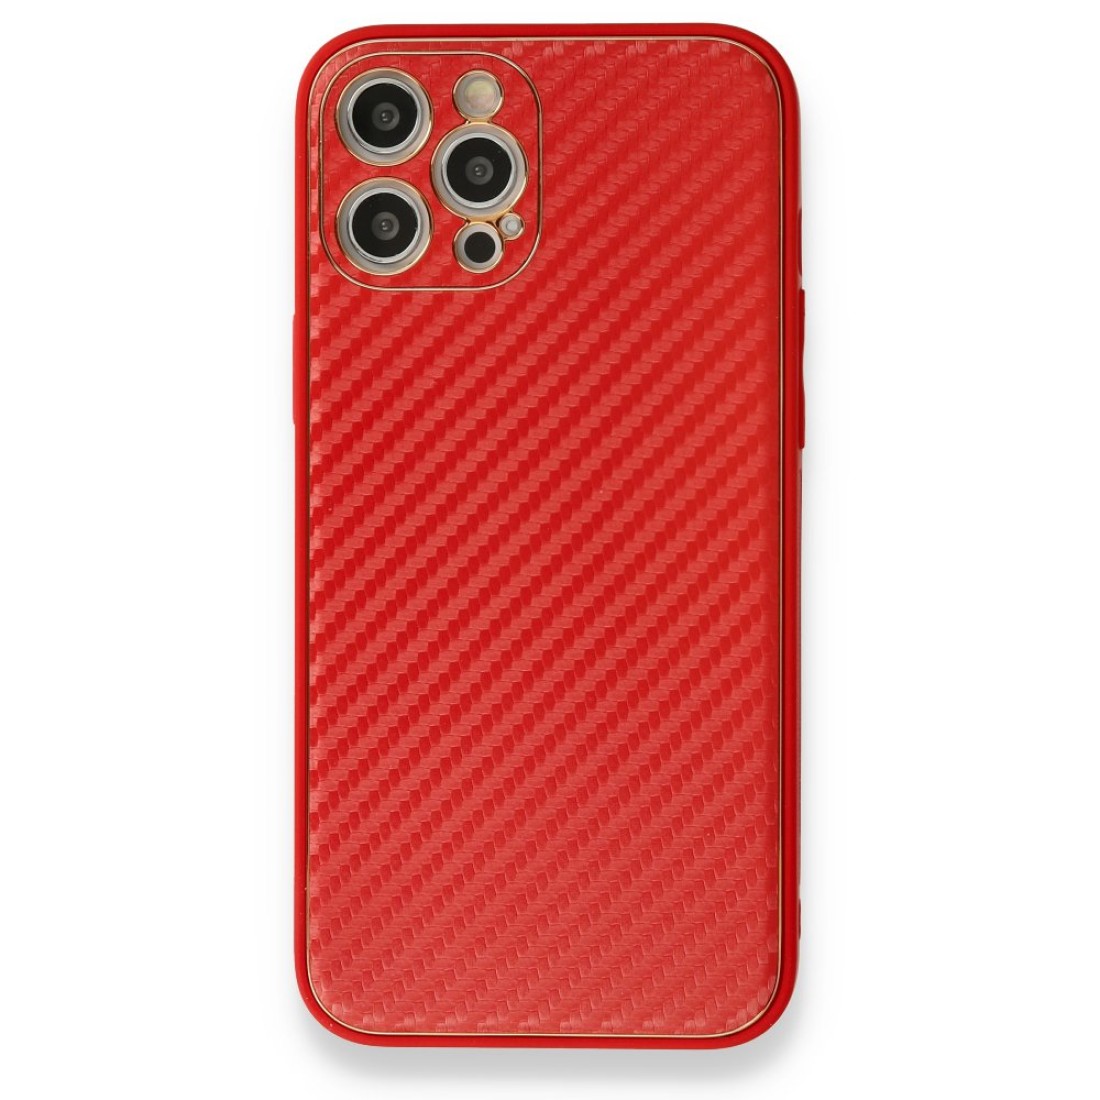 Apple iPhone 12 Pro Kılıf Coco Karbon Silikon - Kırmızı